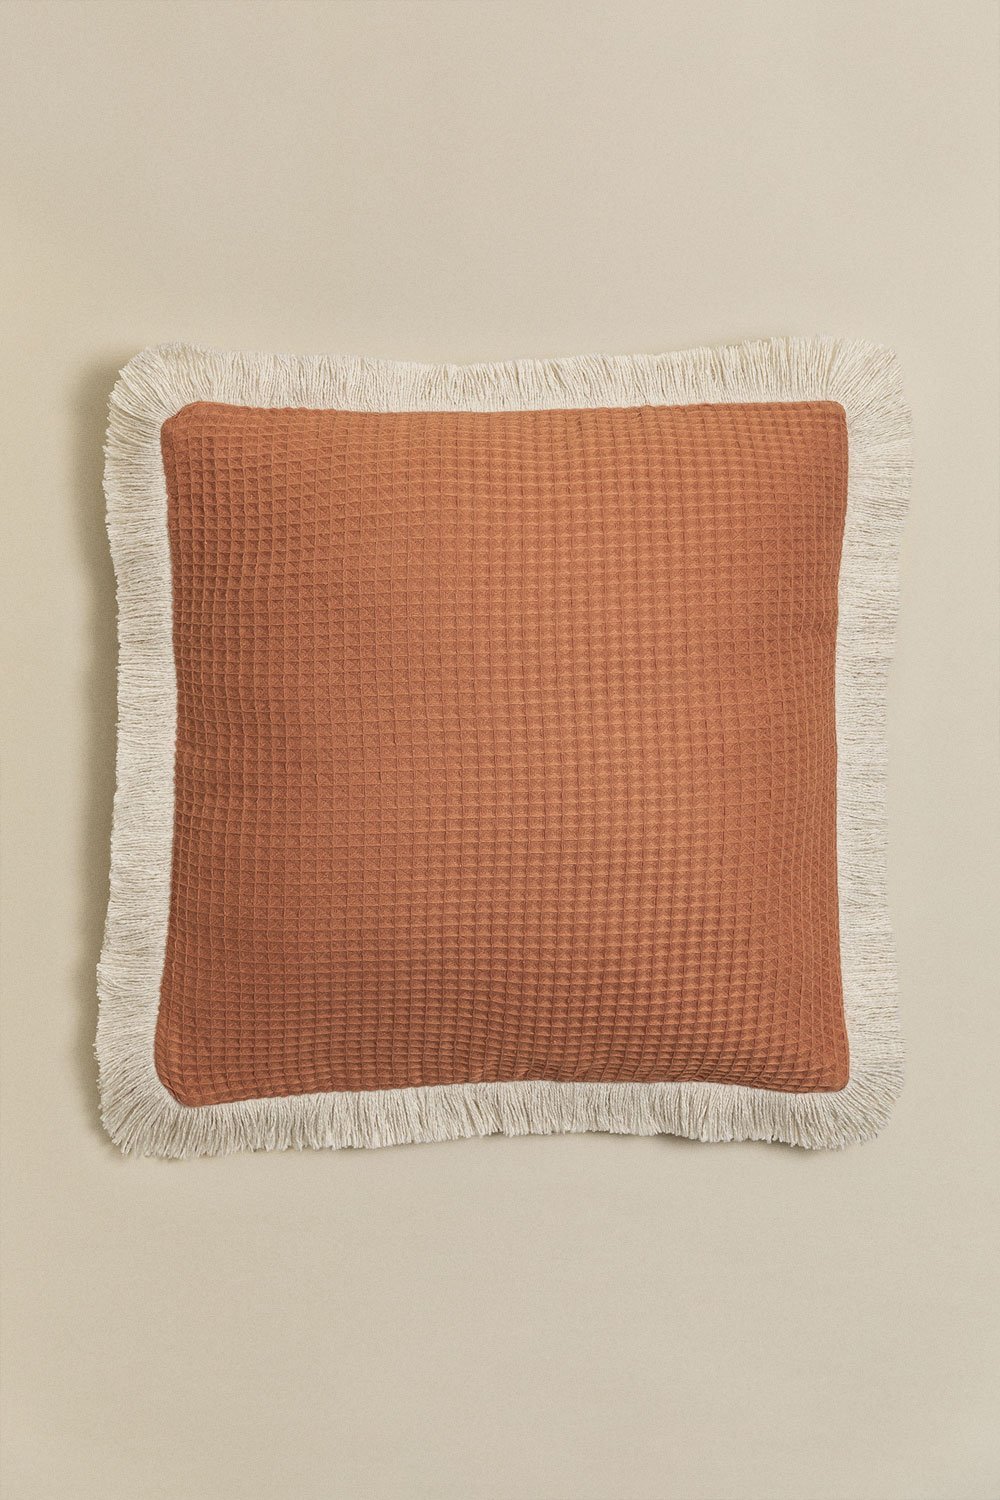 Kwadratowa poduszka bawełniana (45x45 cm) Glenroi, obrazek w galerii 1